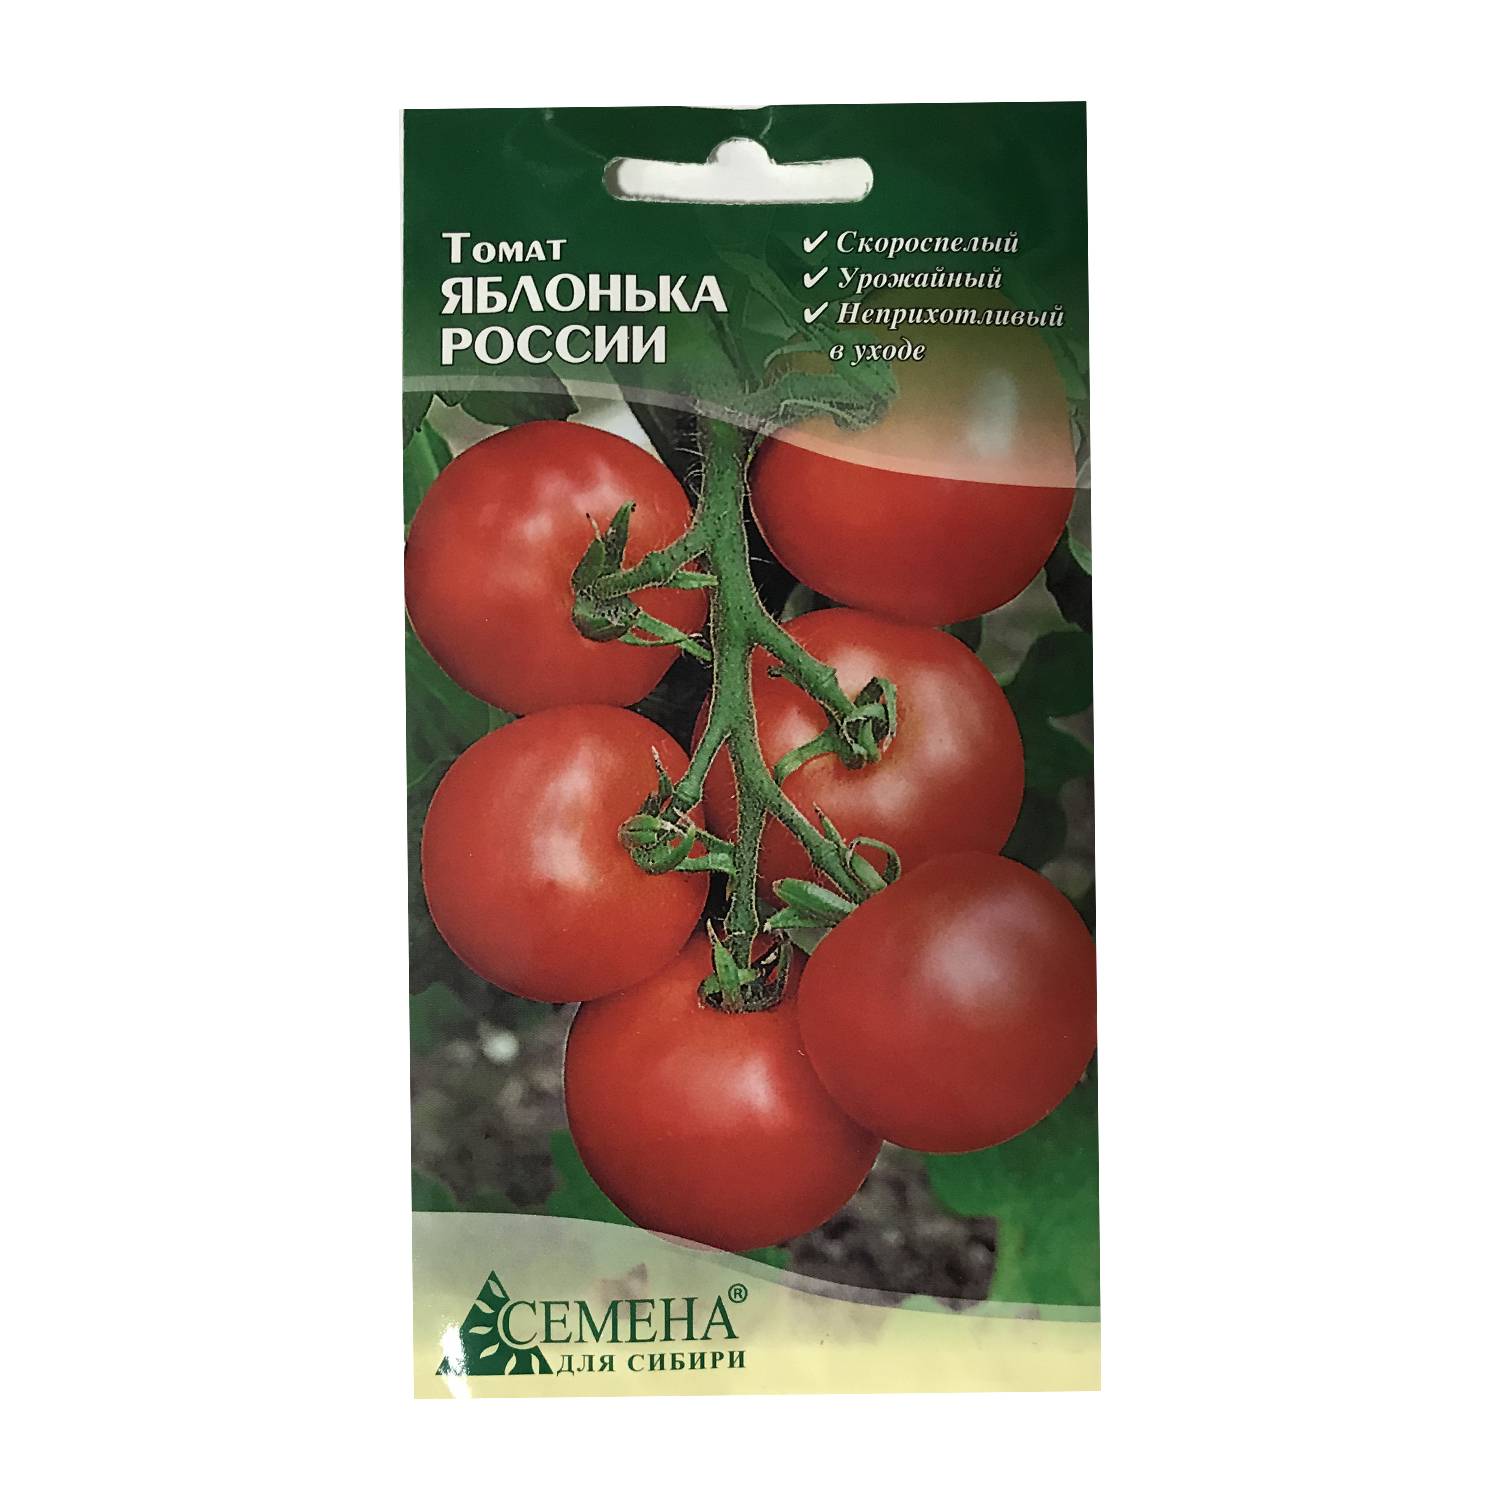 Характеристика и описание сорта помидоров яблонька россии